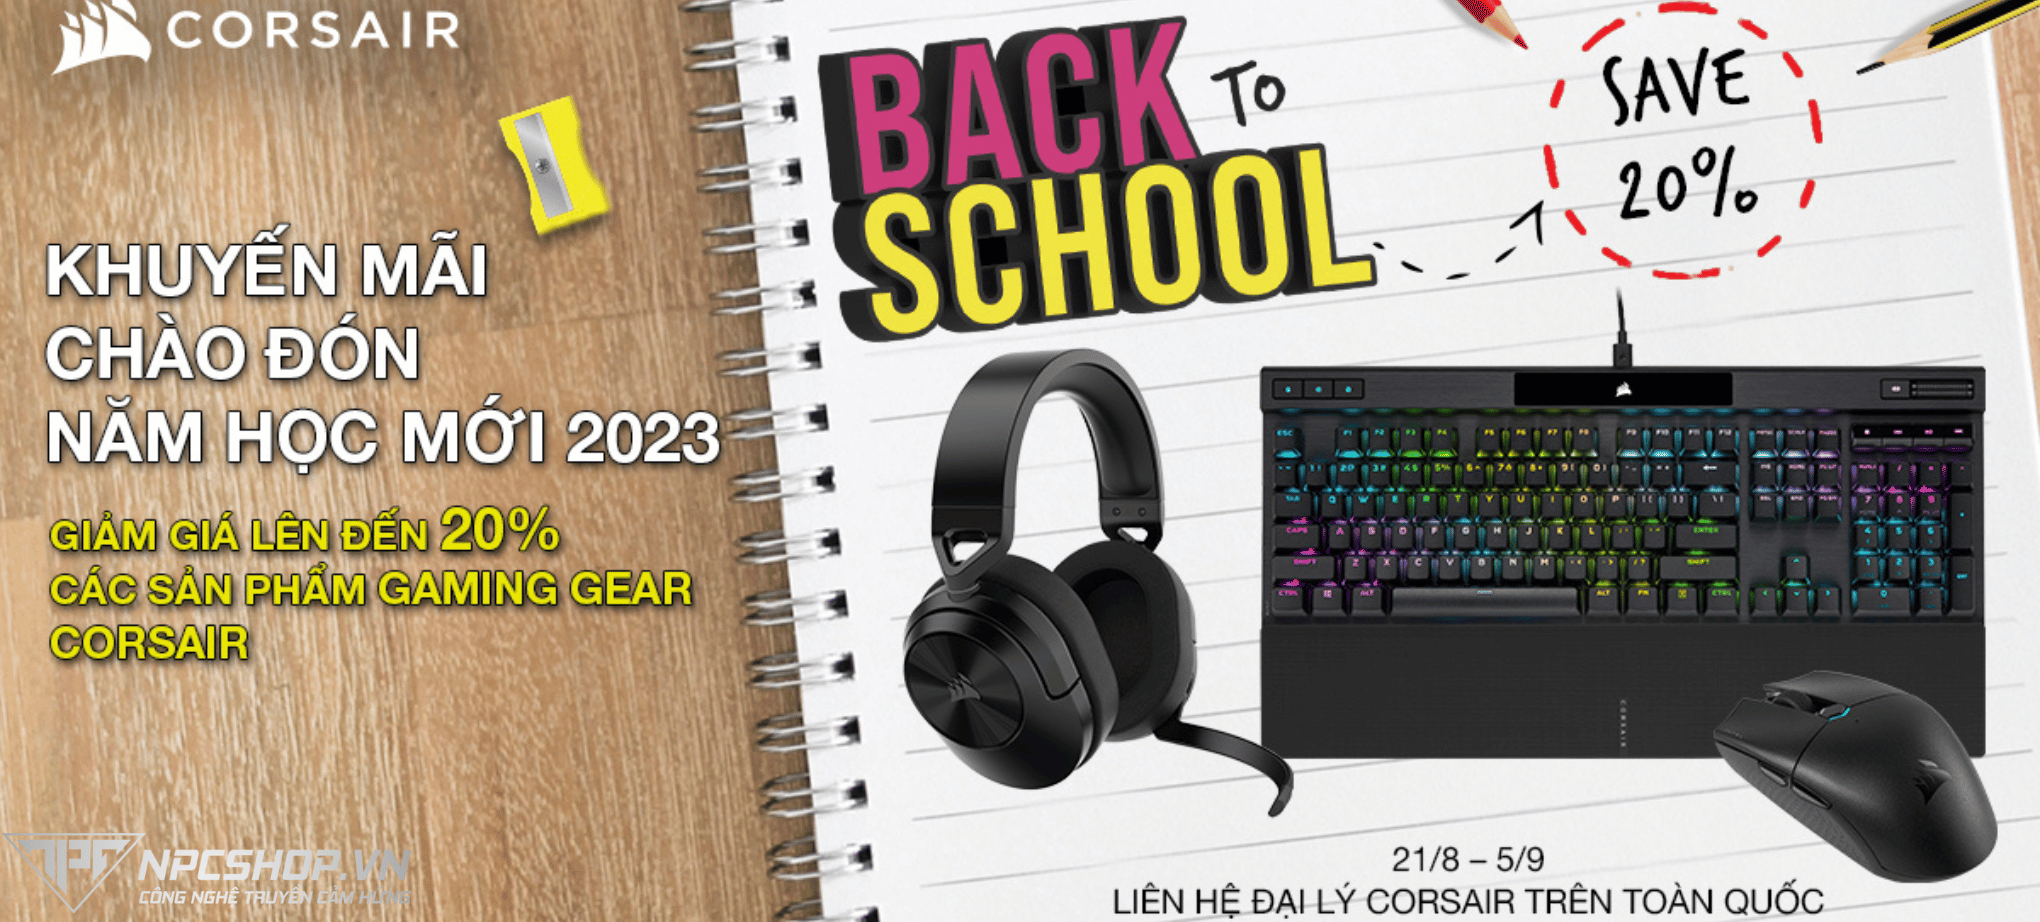 Corsair Back to School 2023: Giảm giá Gear và PC lên tới 20%